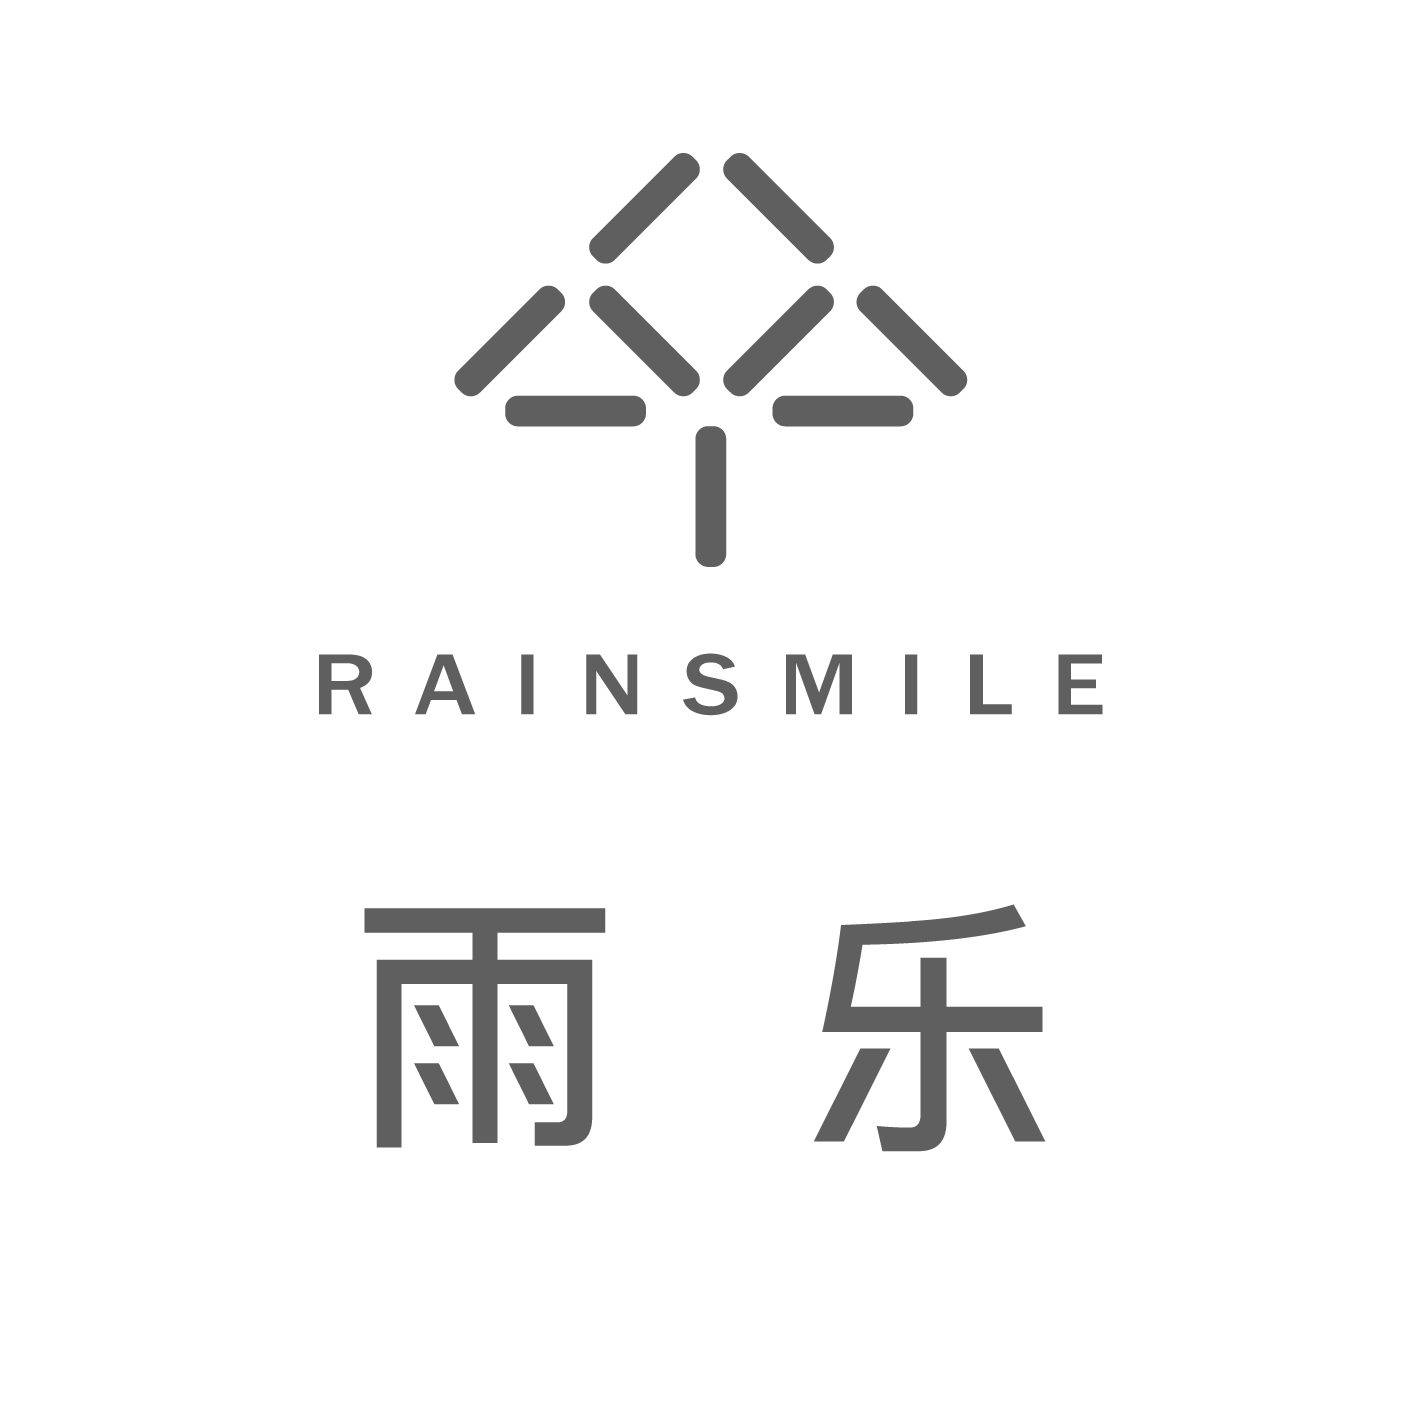 rain smile